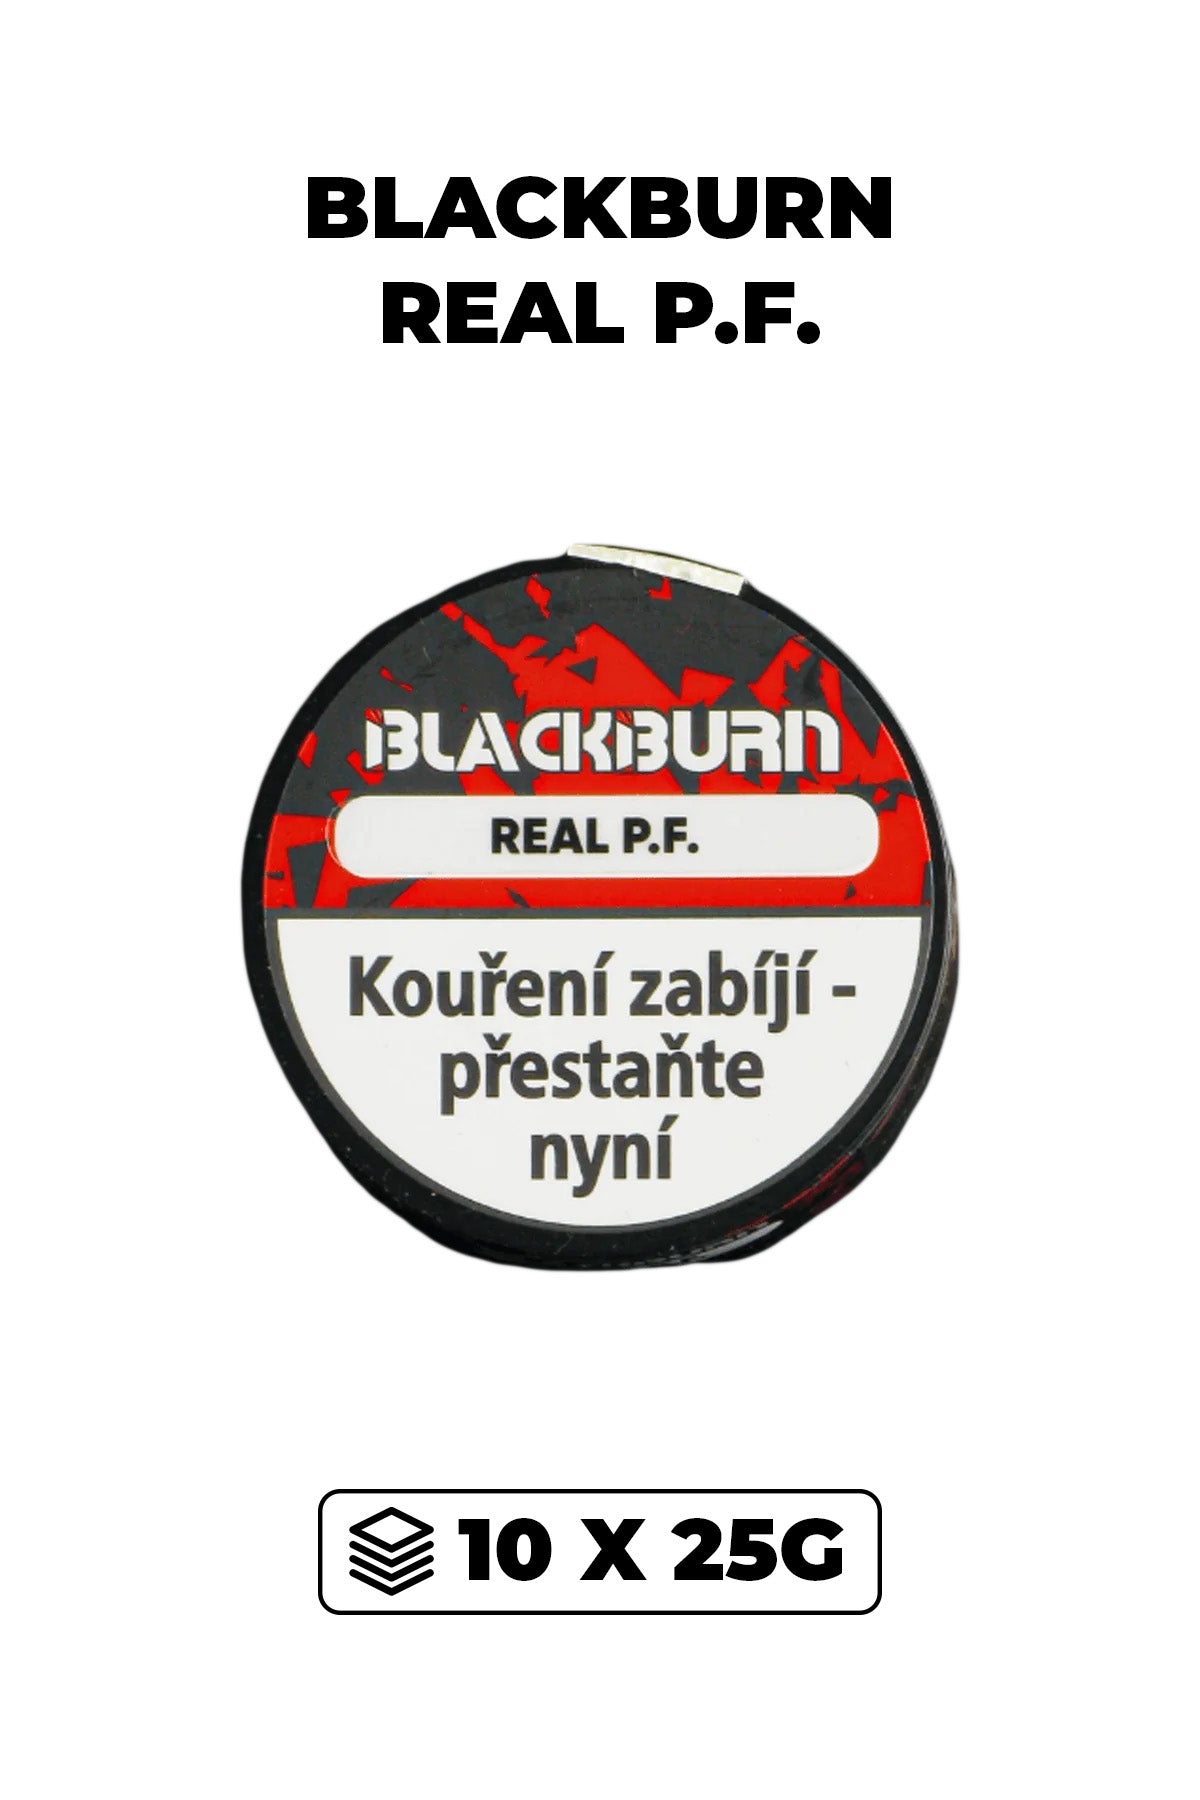 Tabák - BlackBurn 10x25g - Real P.F.